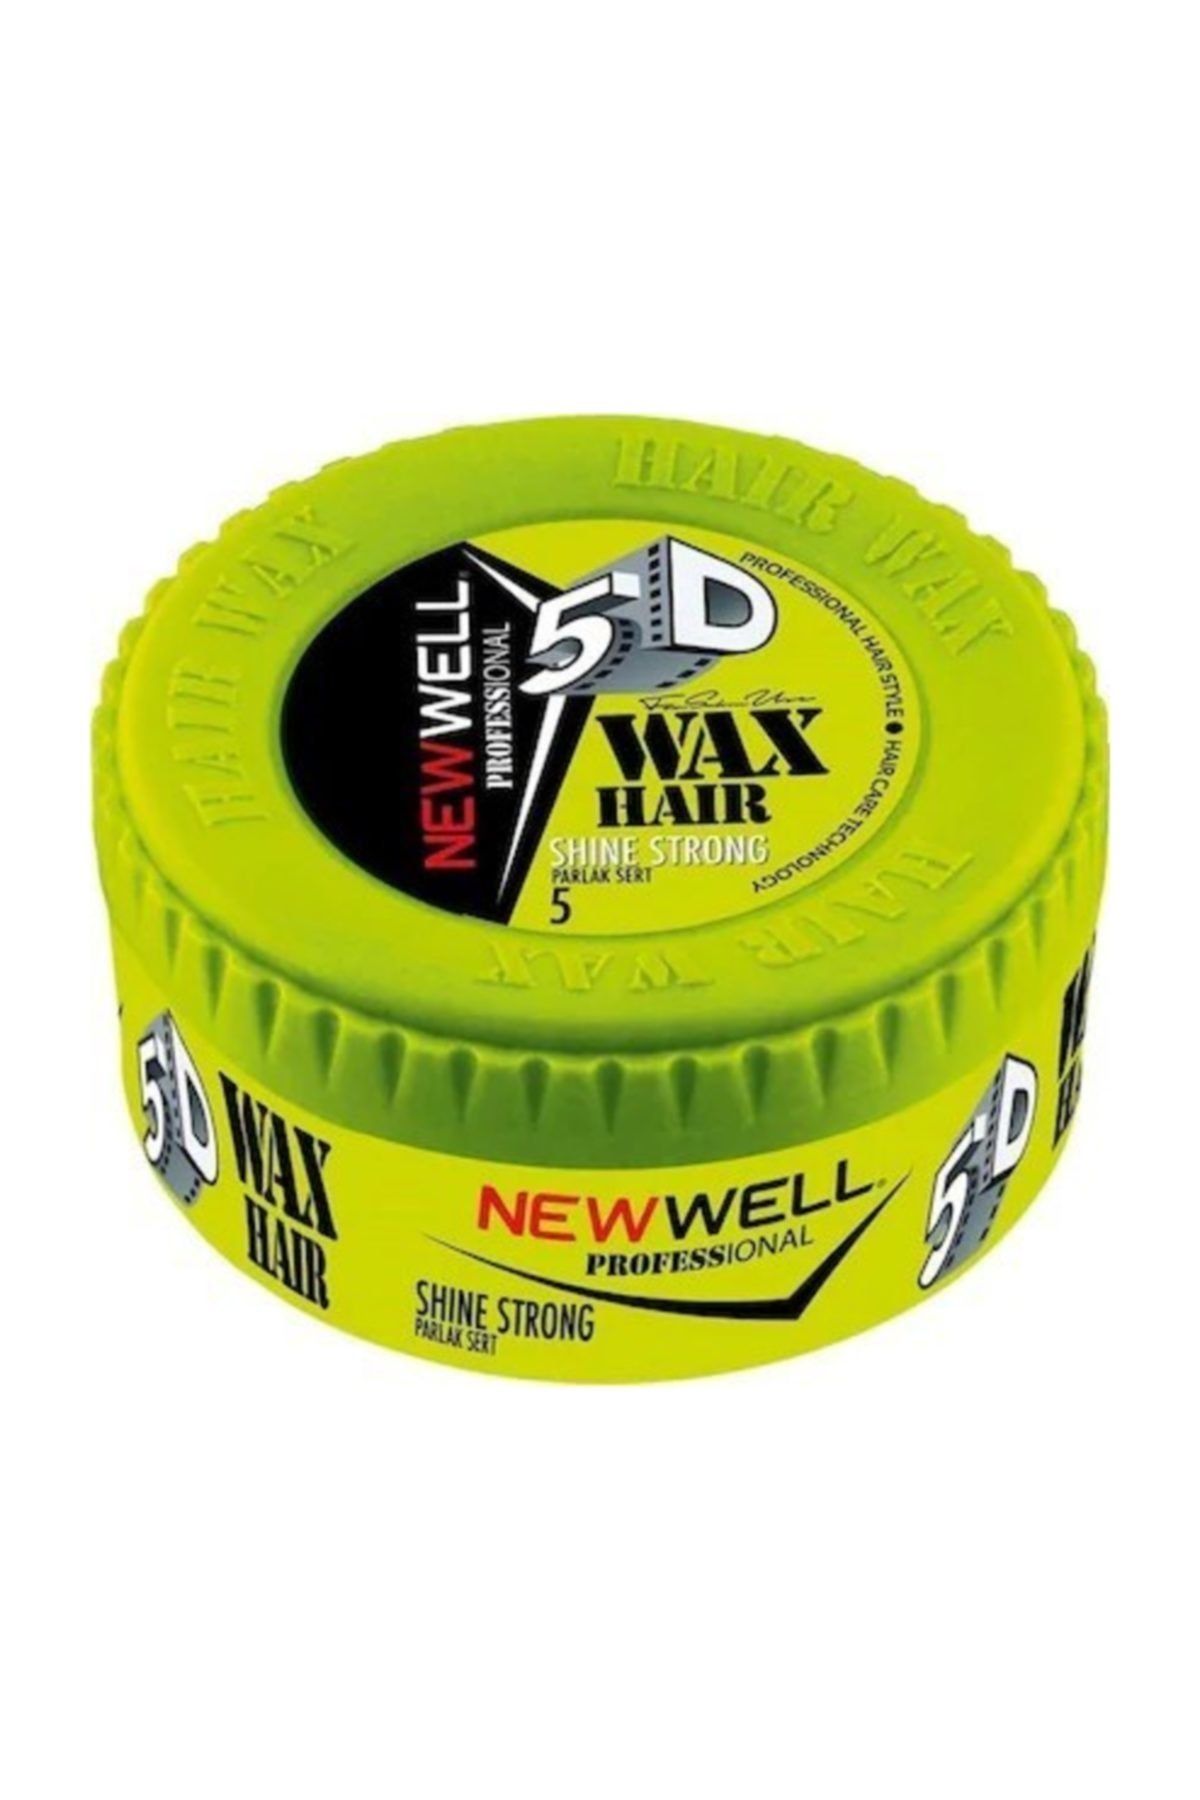 New Well Shine Strong Yeşil Parlak Sert 150ml Wax